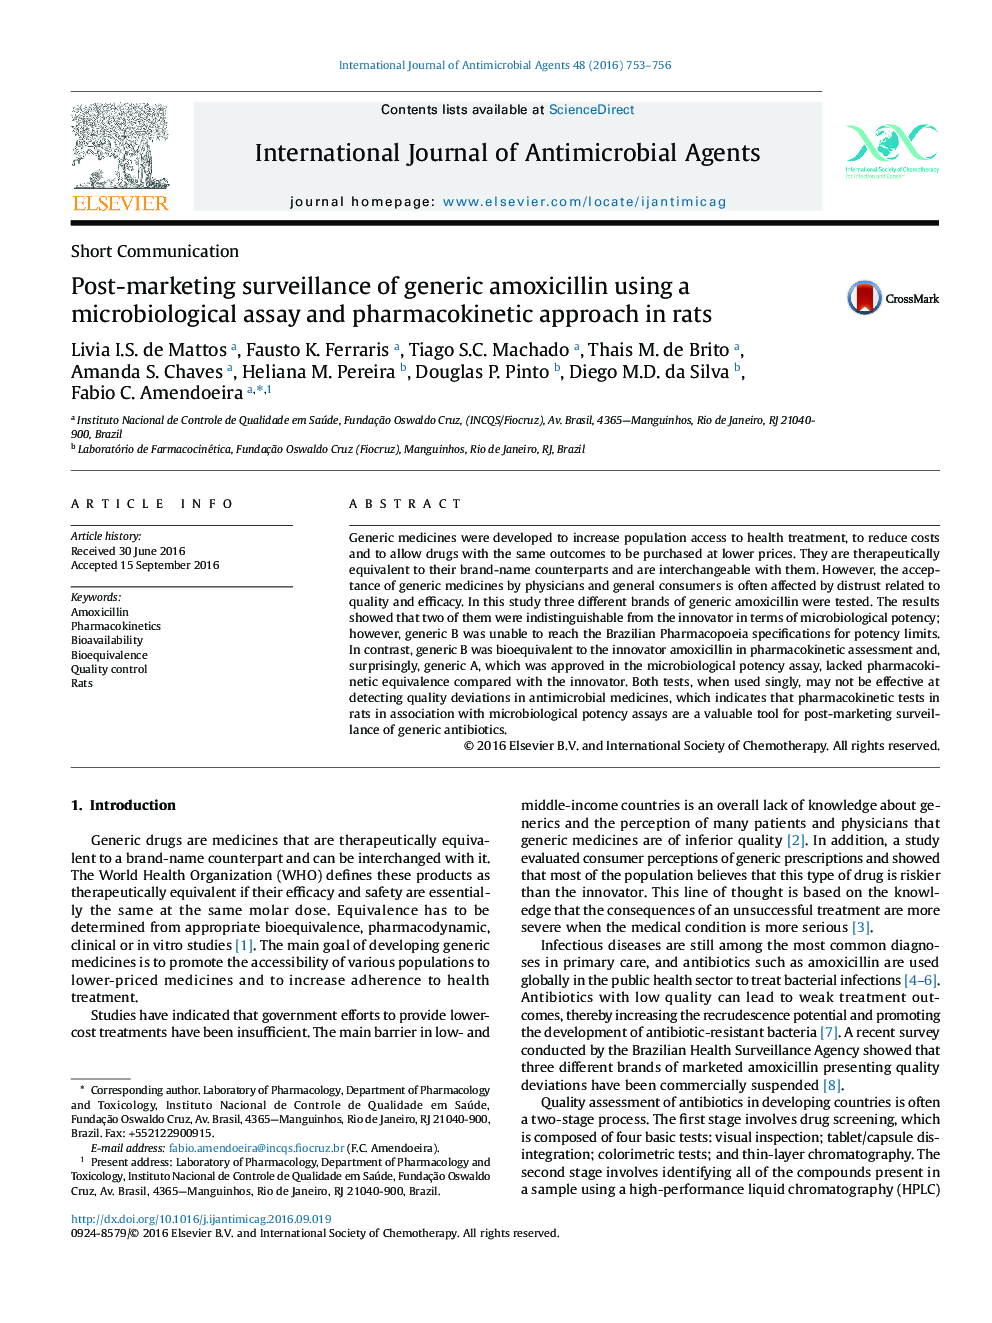 نظارت پس از بازاریابی آموکسی سیلین عمومی با استفاده از روش میکروبیولوژیکی و رویکرد فارماکوکینتیک در موش صحرایی 